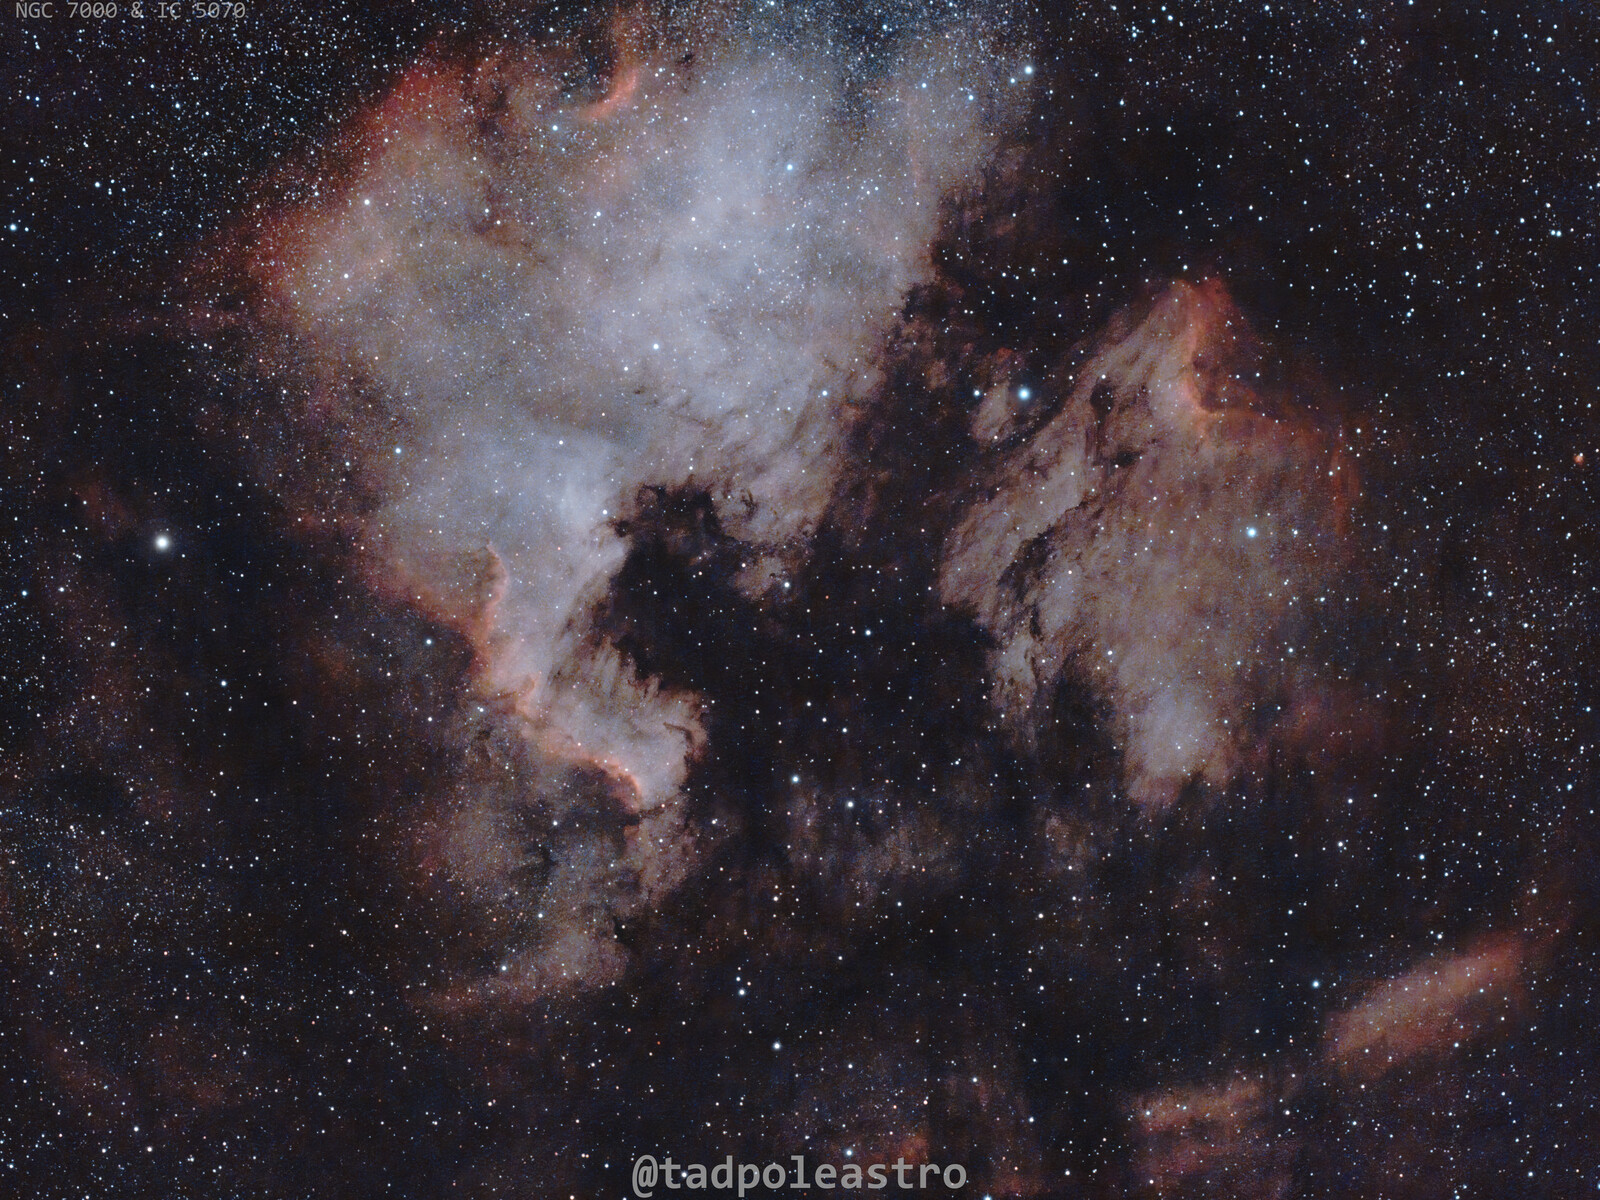 NGC 7000 and IC 5070 - 2022